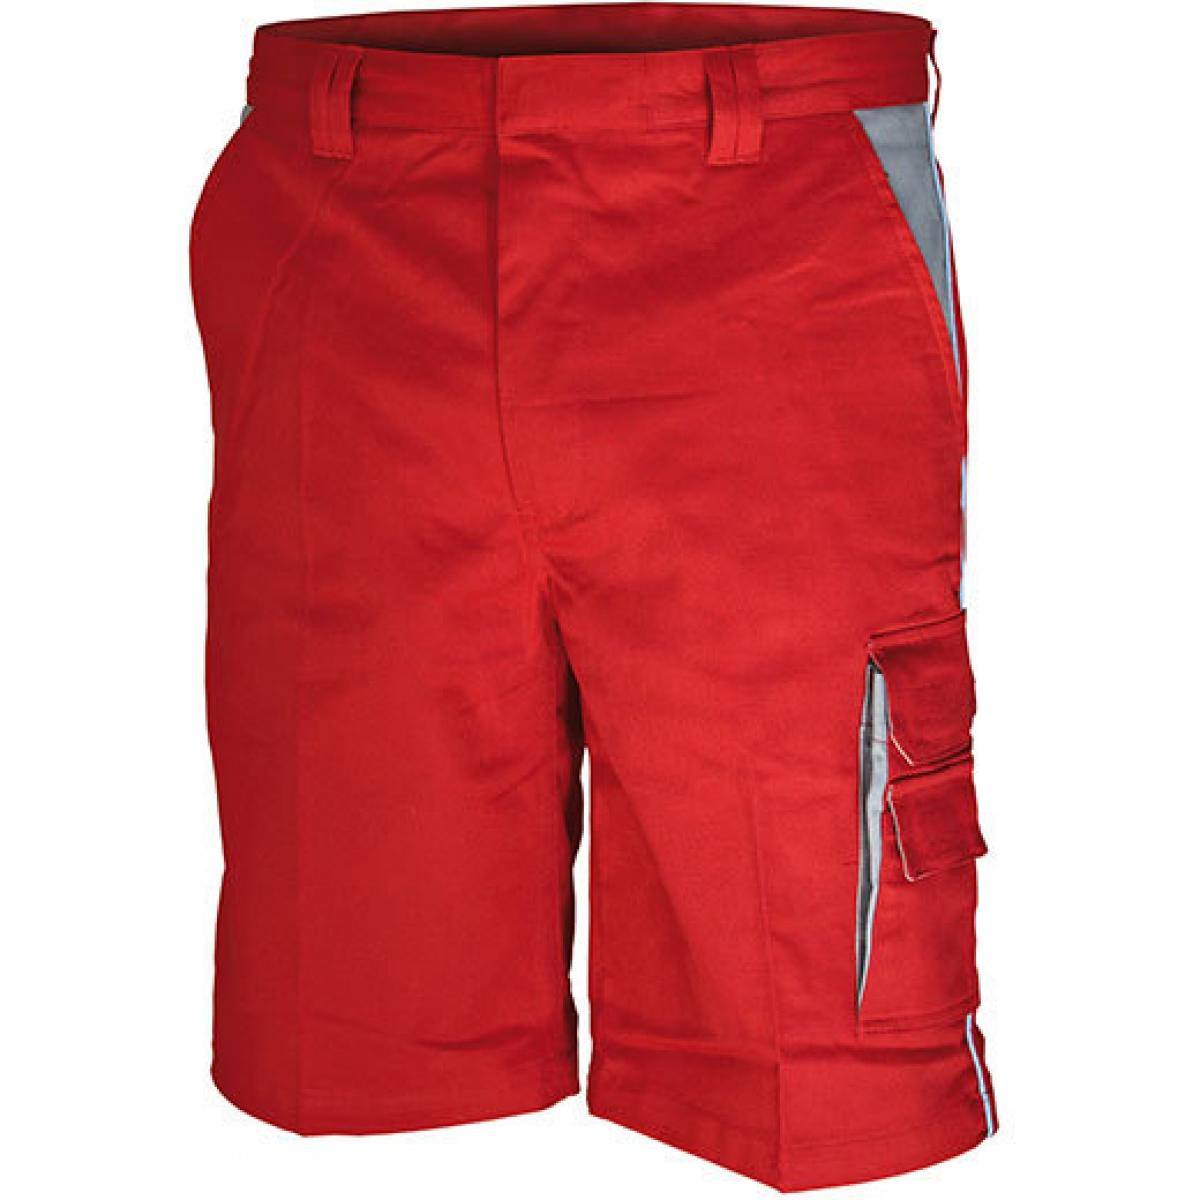 Hersteller: Carson Contrast Herstellernummer: CC709S Artikelbezeichnung: Contrast Work Shorts / Bei 60 Grad waschbar Farbe: Red/Grey